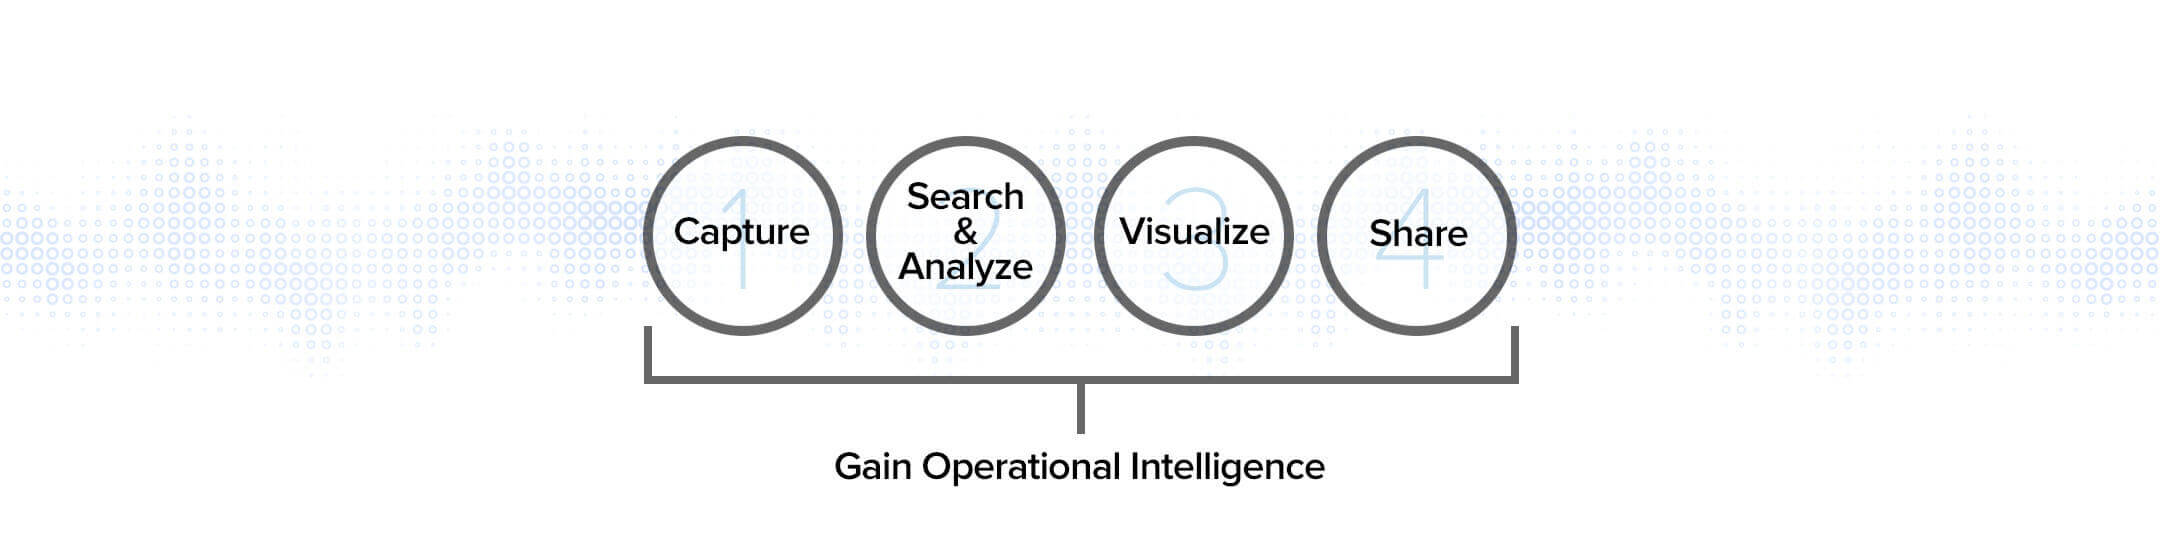 HIW - Gain Operational Intelligence